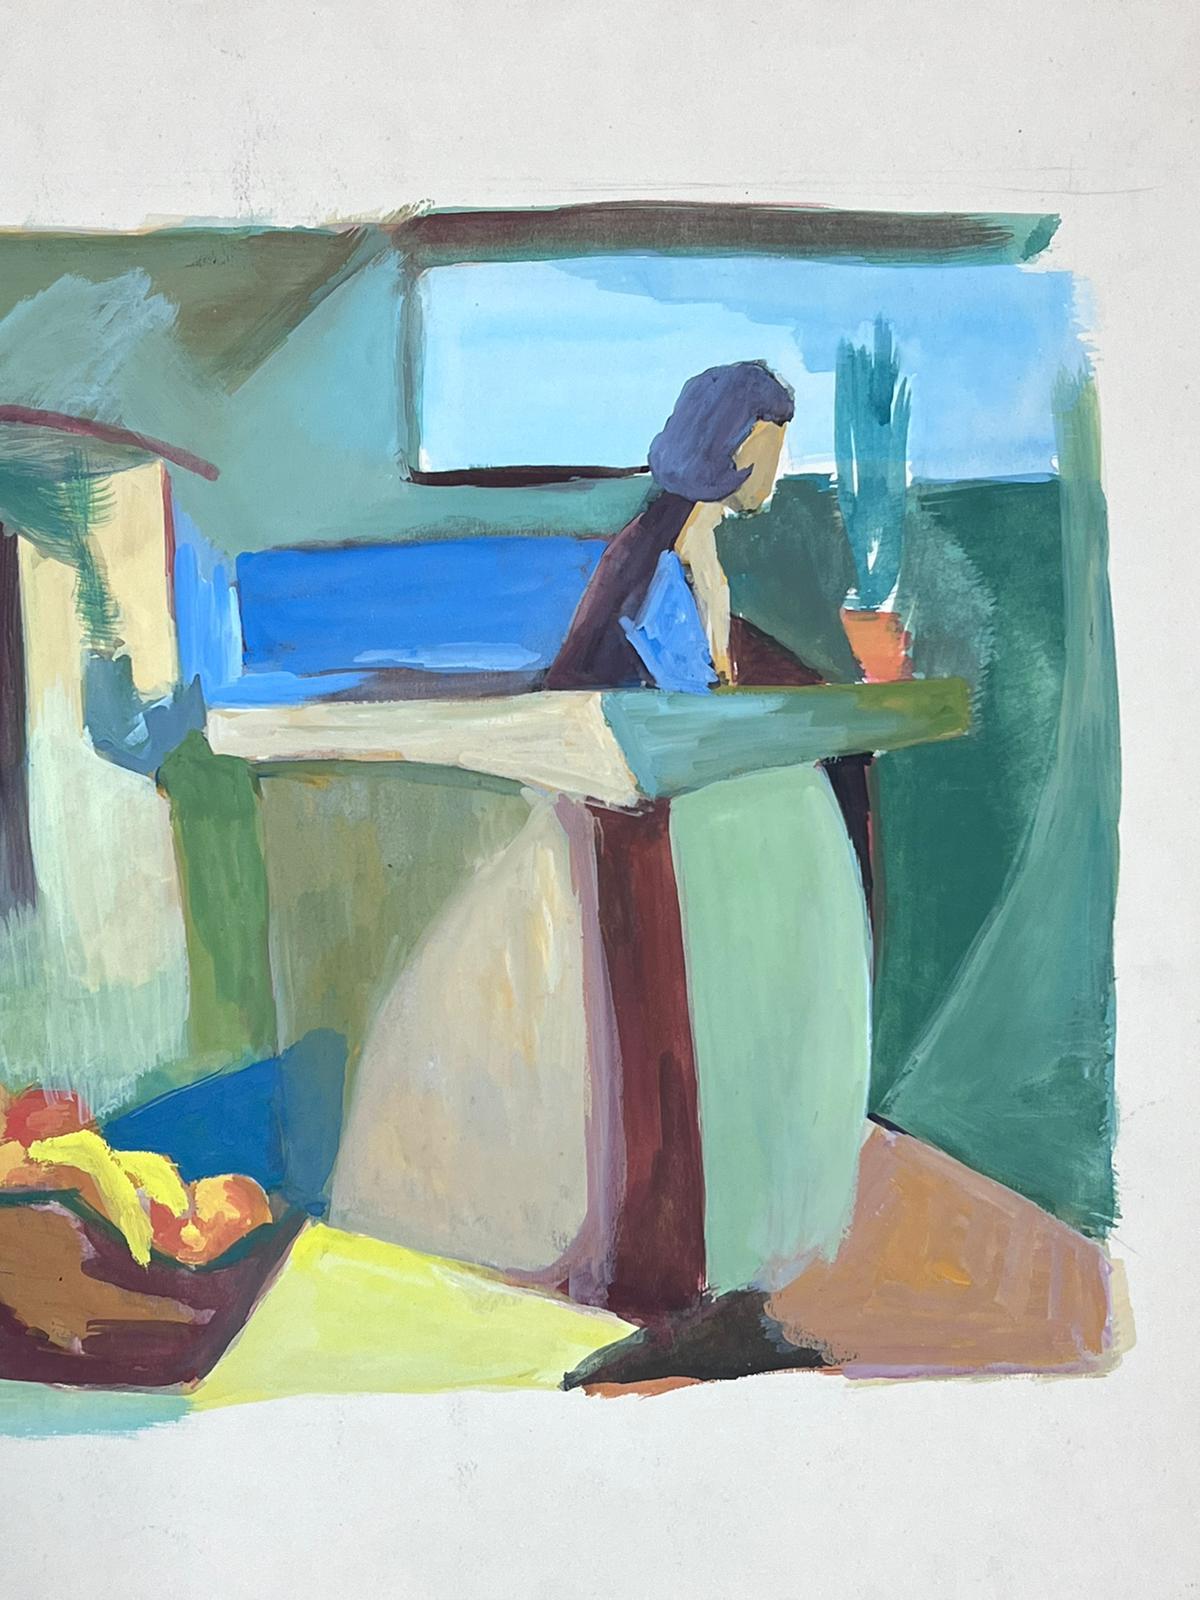 Das Cafe Interieur
von Guy Nicod
(Französisch 1923 - 2021)
Gouache auf Künstlerpapier, ungerahmt
Gemälde : 20 x 26 Zoll
Herkunft: Künstlernachlass, Frankreich
Zustand: sehr guter und gesunder Zustand